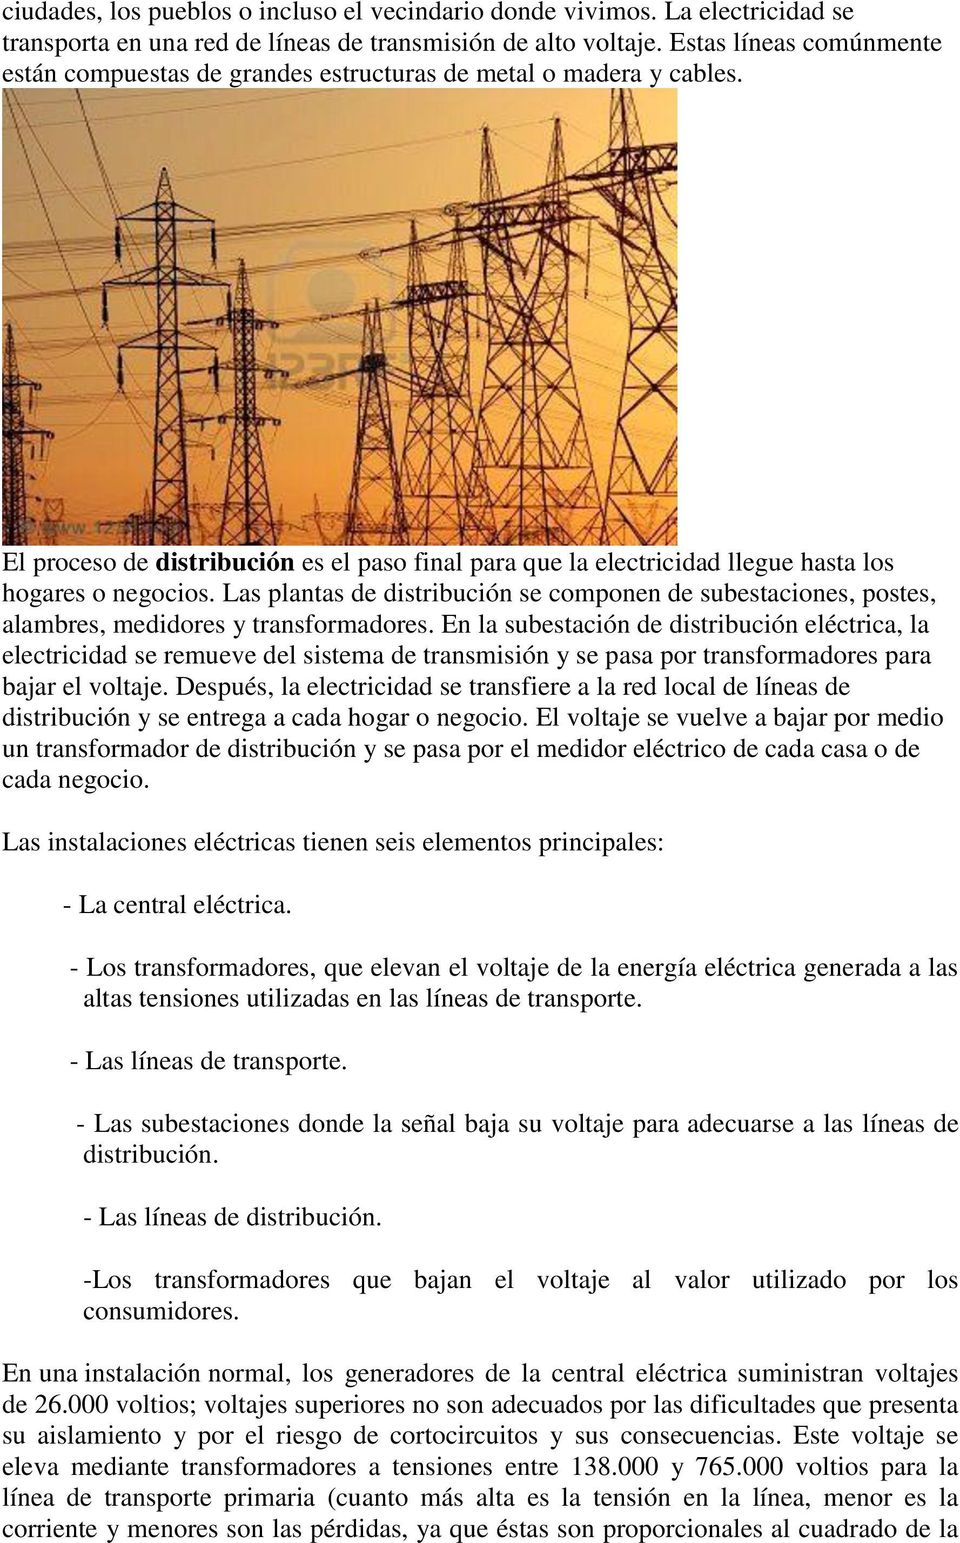 Cómo llega la electricidad a nuestras casas? - PDF Free Download